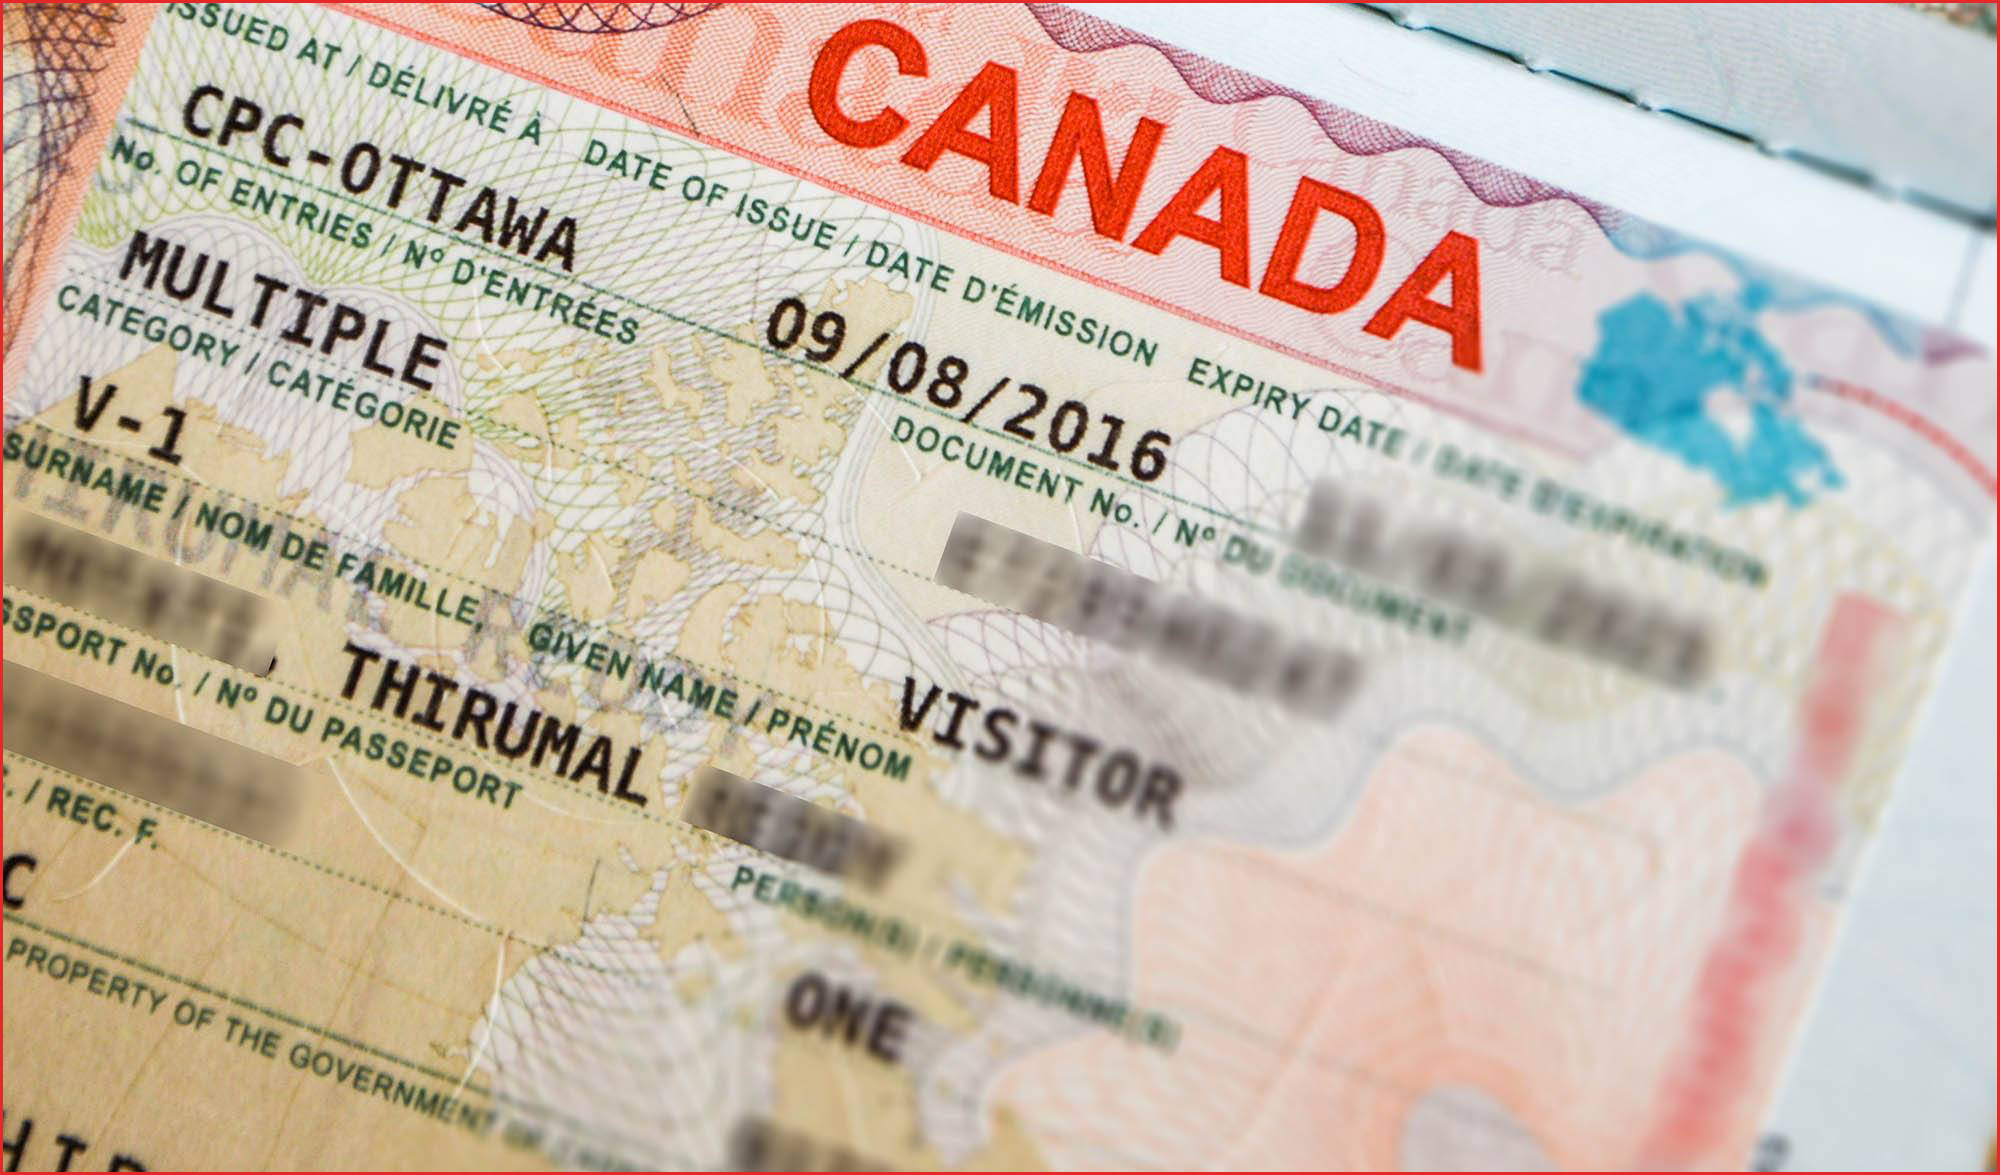 canada travel visa cost